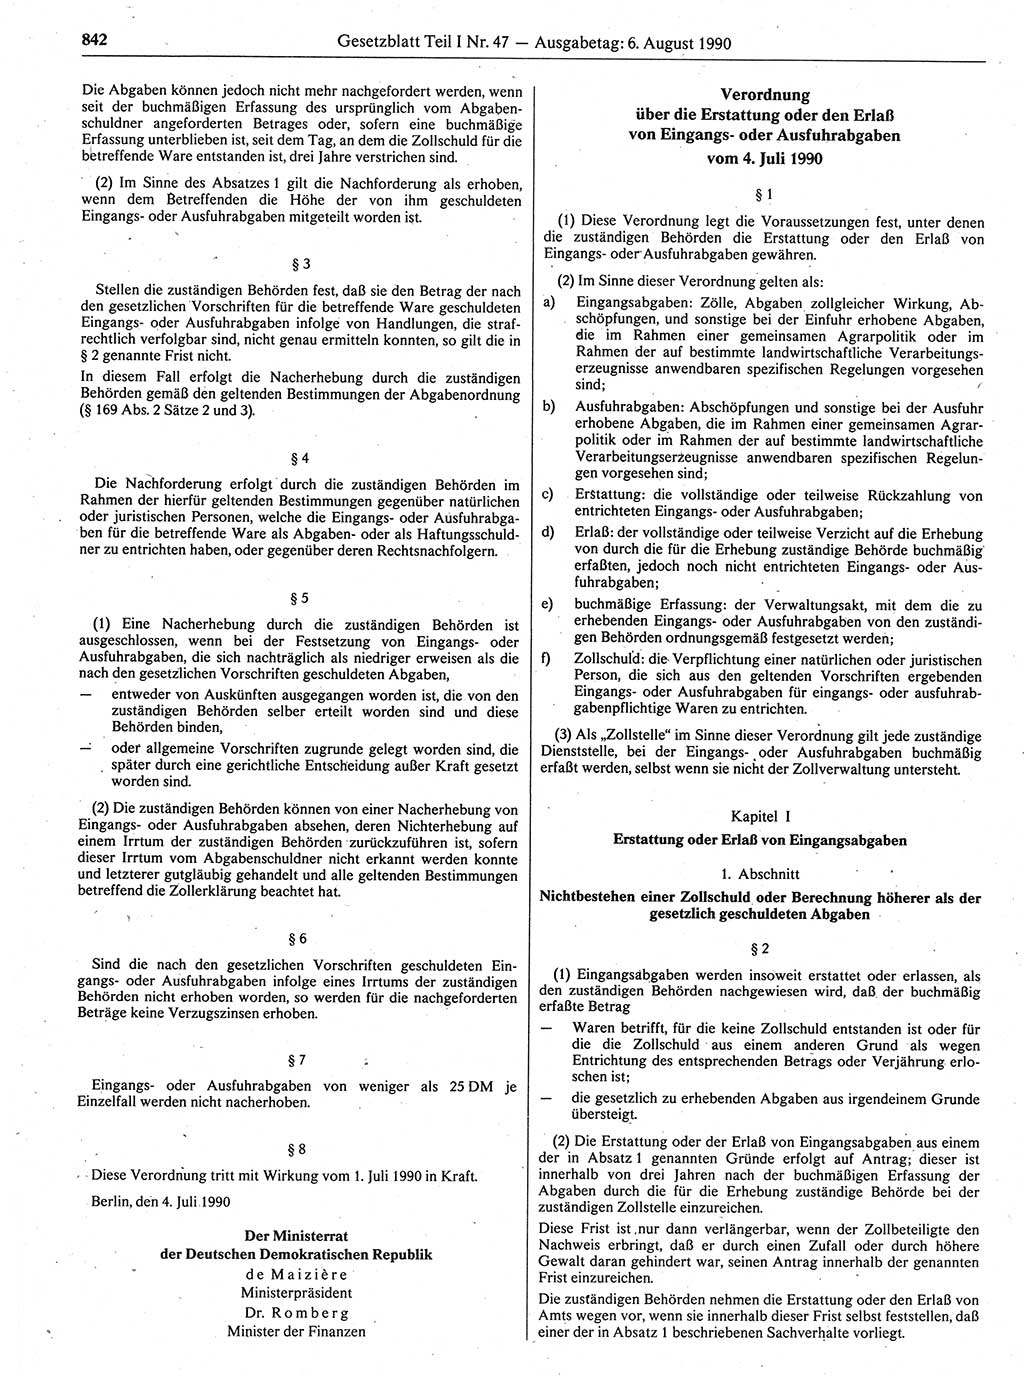 Gesetzblatt (GBl.) der Deutschen Demokratischen Republik (DDR) Teil Ⅰ 1990, Seite 842 (GBl. DDR Ⅰ 1990, S. 842)